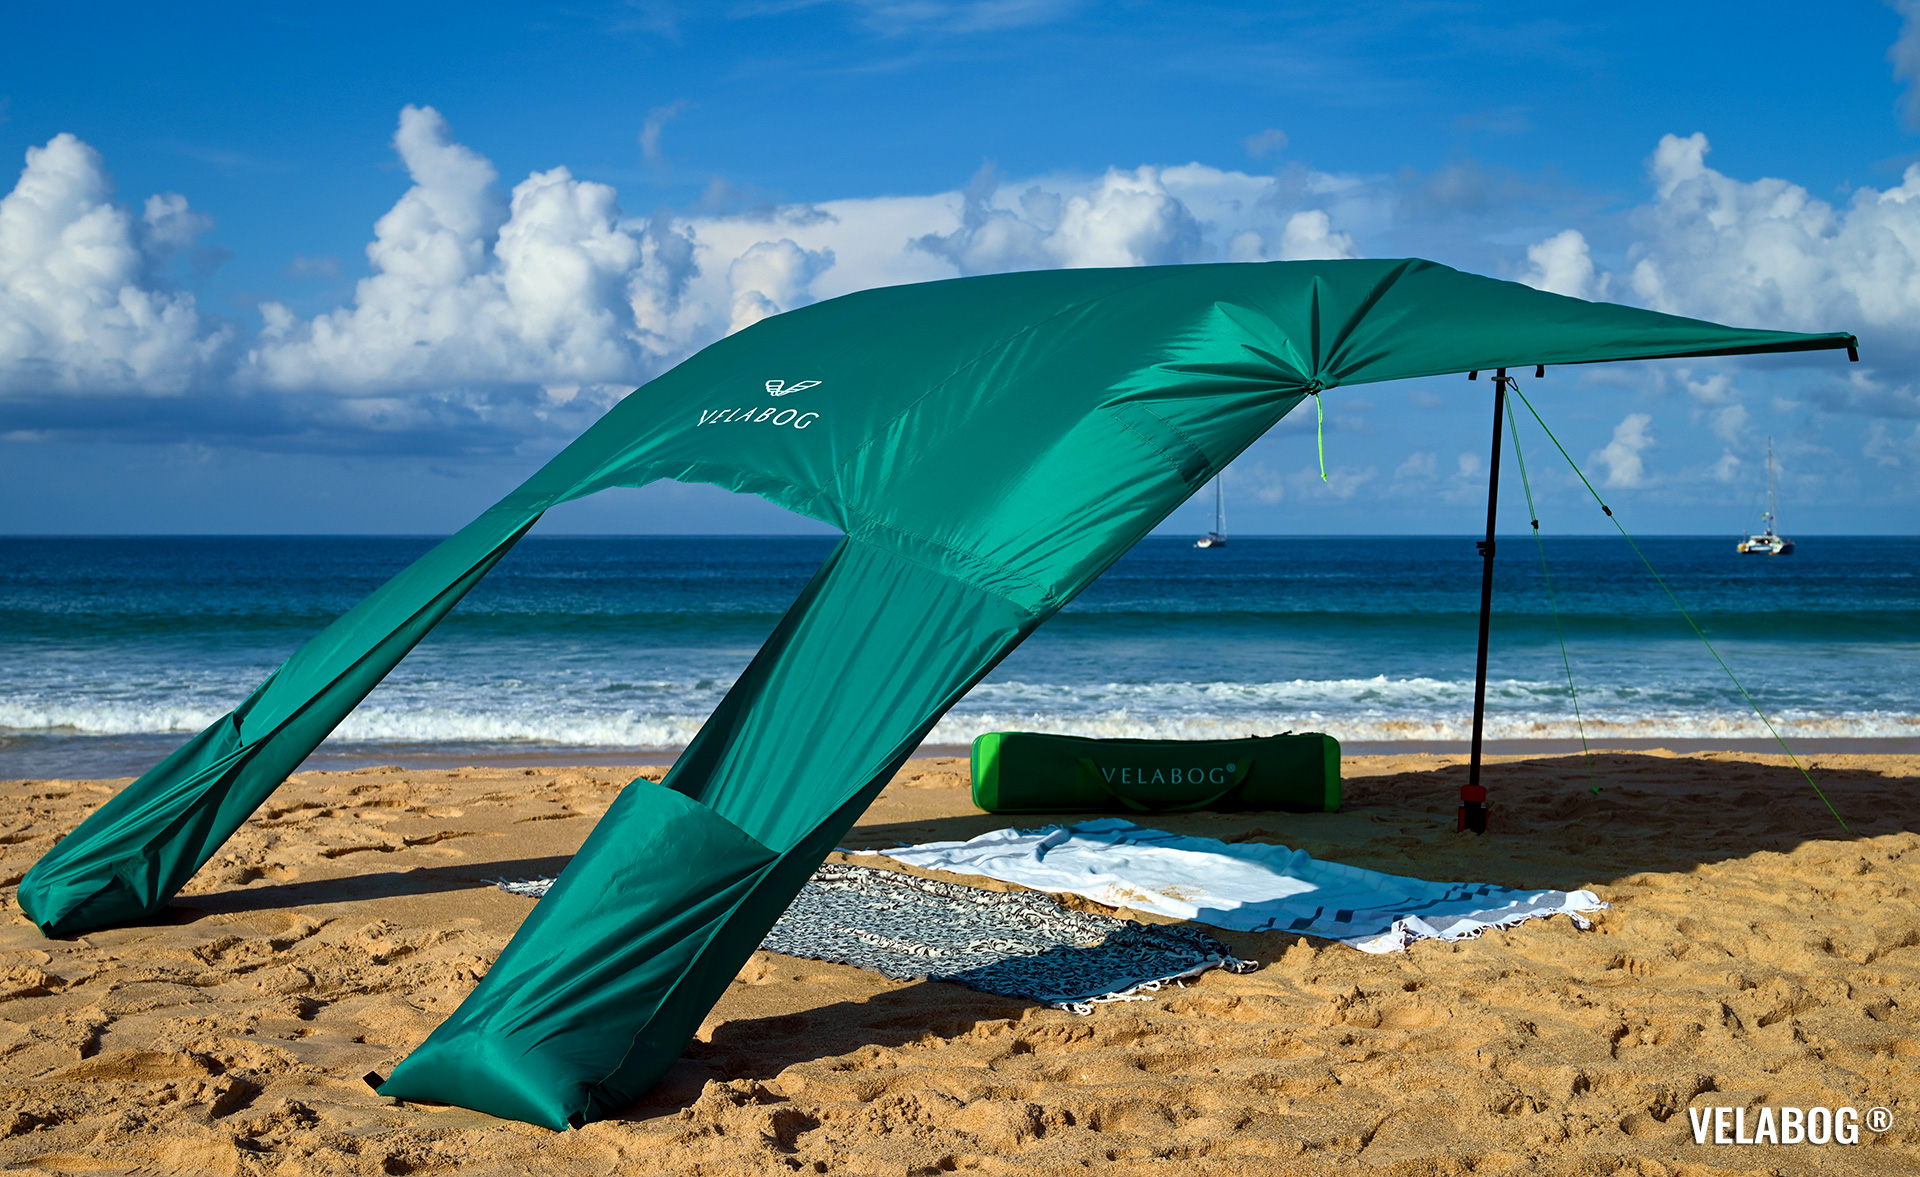 Namiot plażowy żagiel słoneczny Velabog Breeze. Opcja montażu A - od lekkiego do silnego wiatru. Kolor: zielony. Najlepsza ochrona przeciwsłoneczna na plaży. | Velabog ©